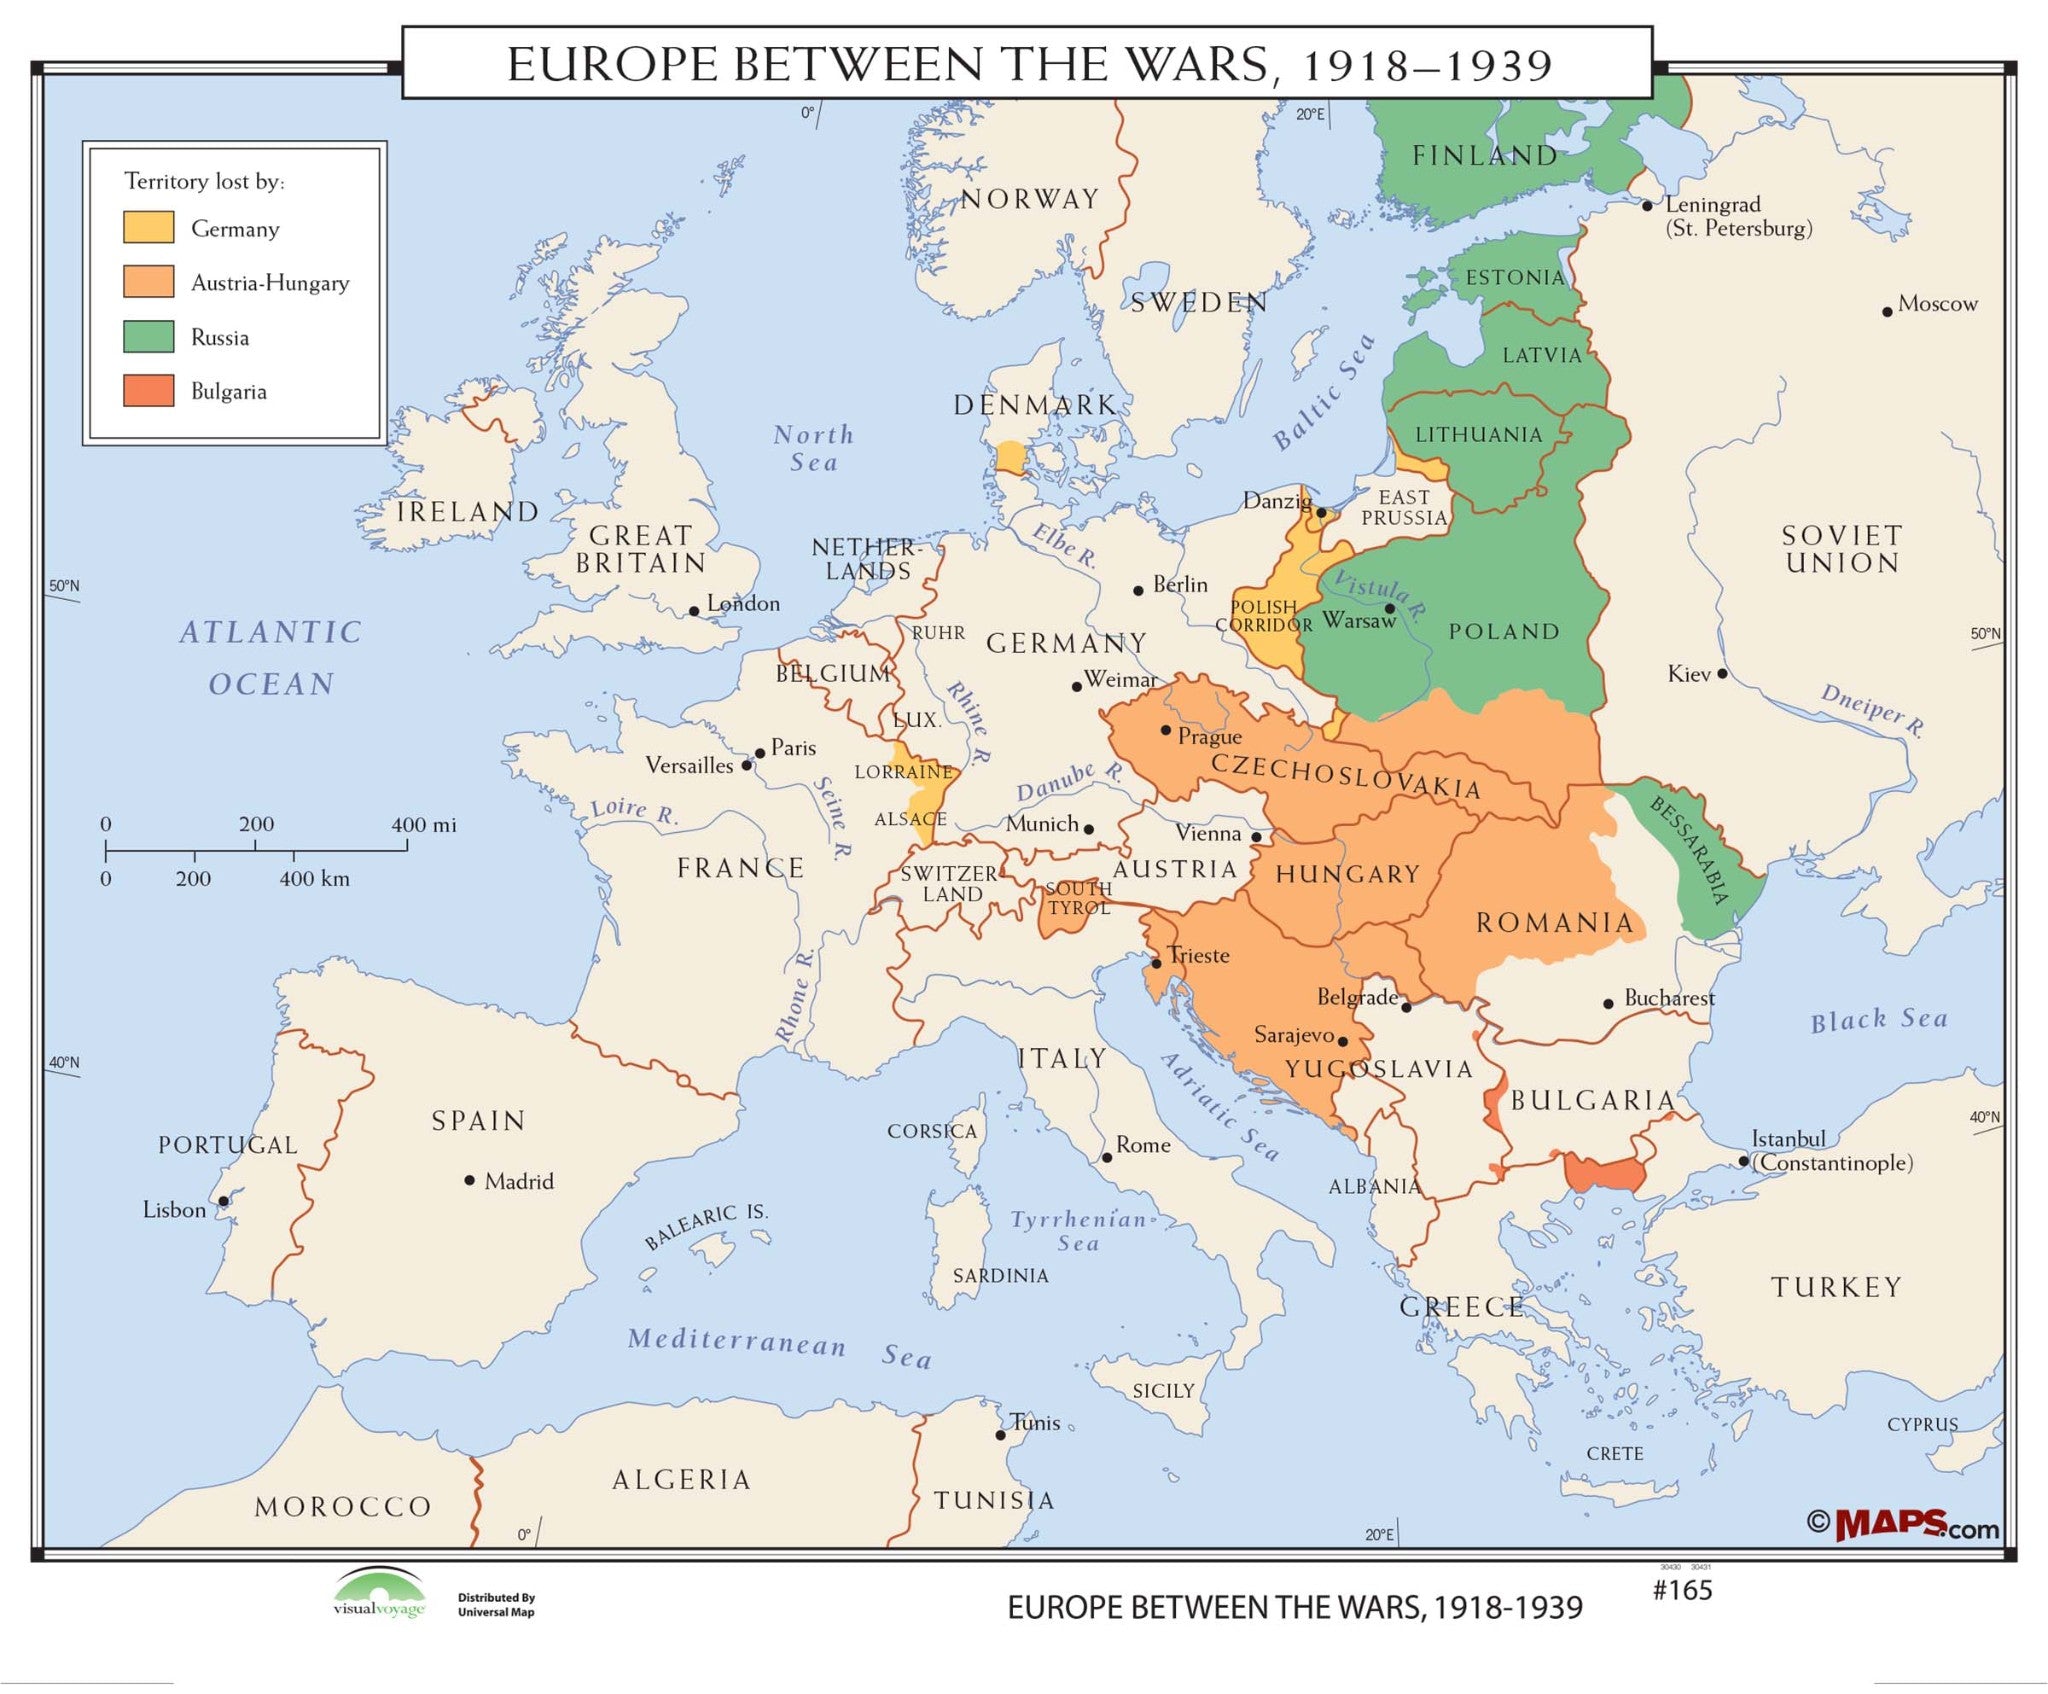 #165 Europe Between the Wars 1918-1939